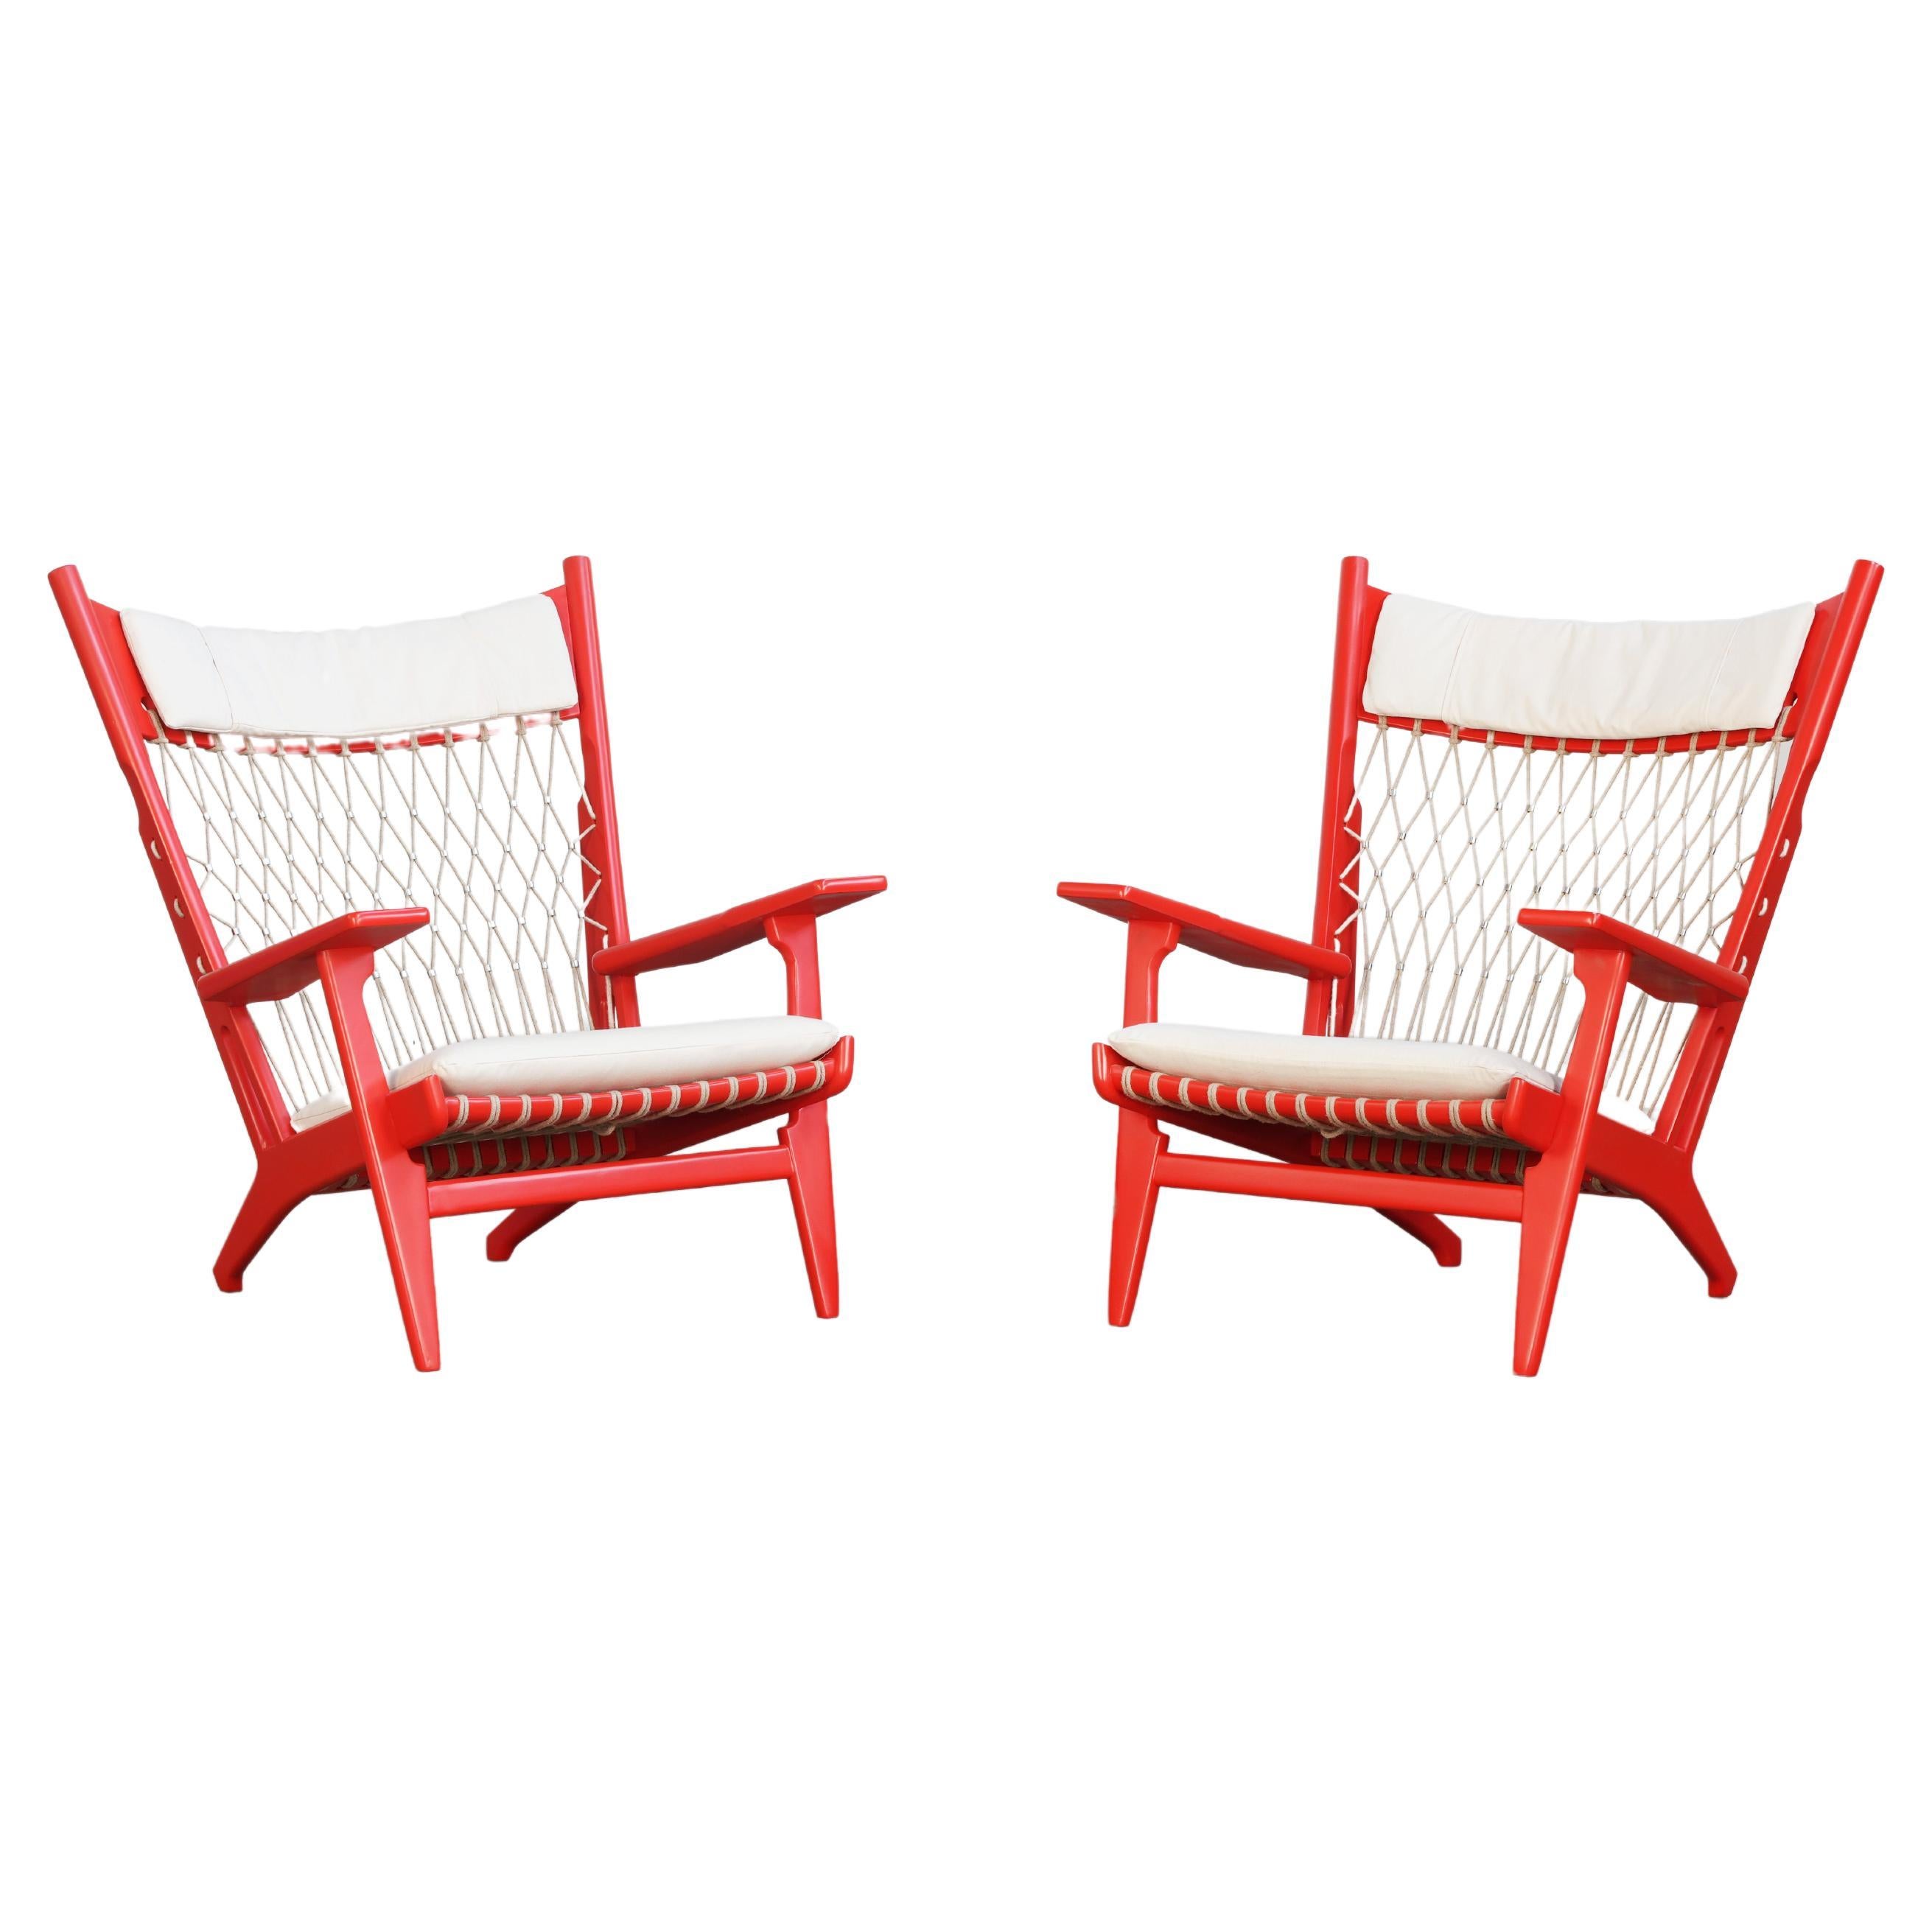 Pair of Hans J. Wegner Lounge Chairs Mod. JH719 for Johannes Hansen Denmark 1968 For Sale